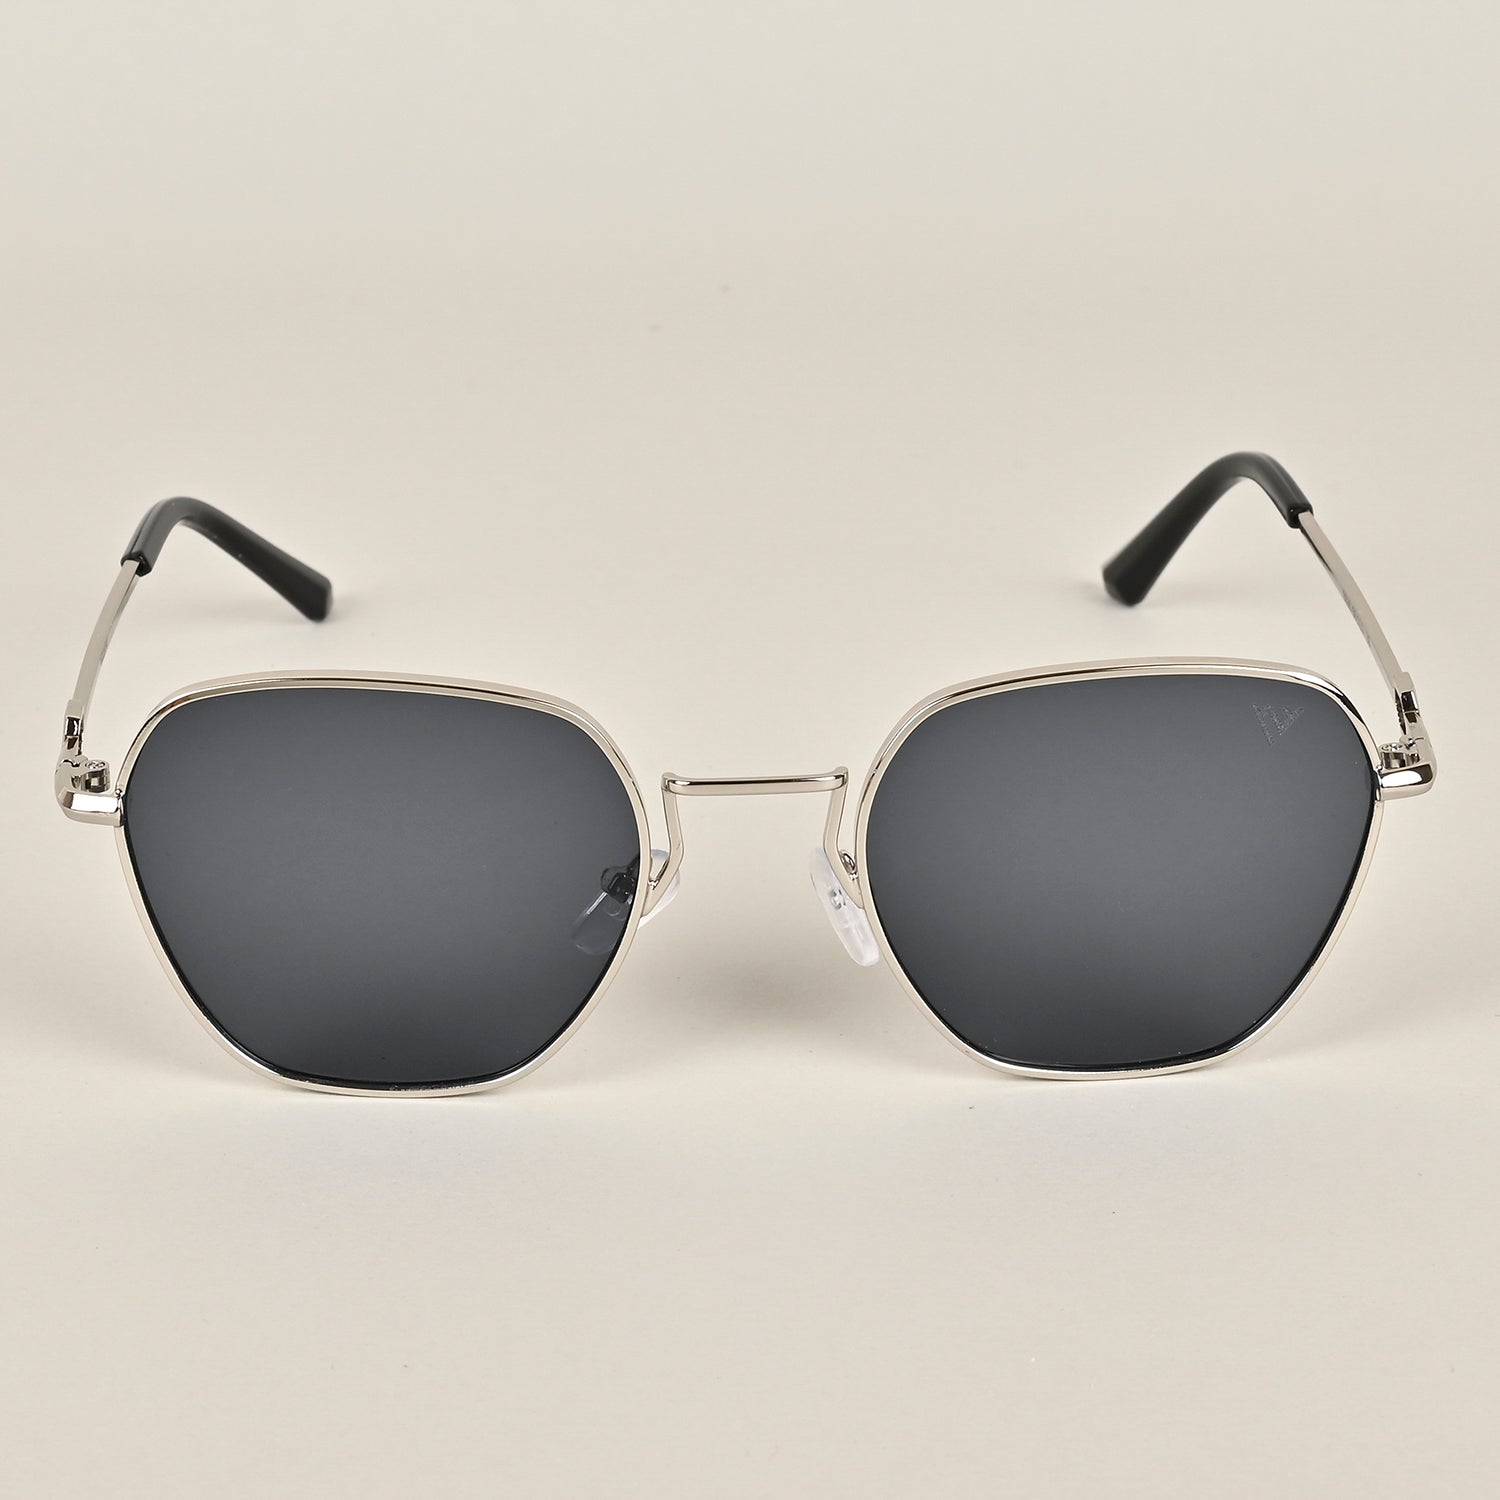 Voyage Silver-Black Retro Square Sunglasses MG2778